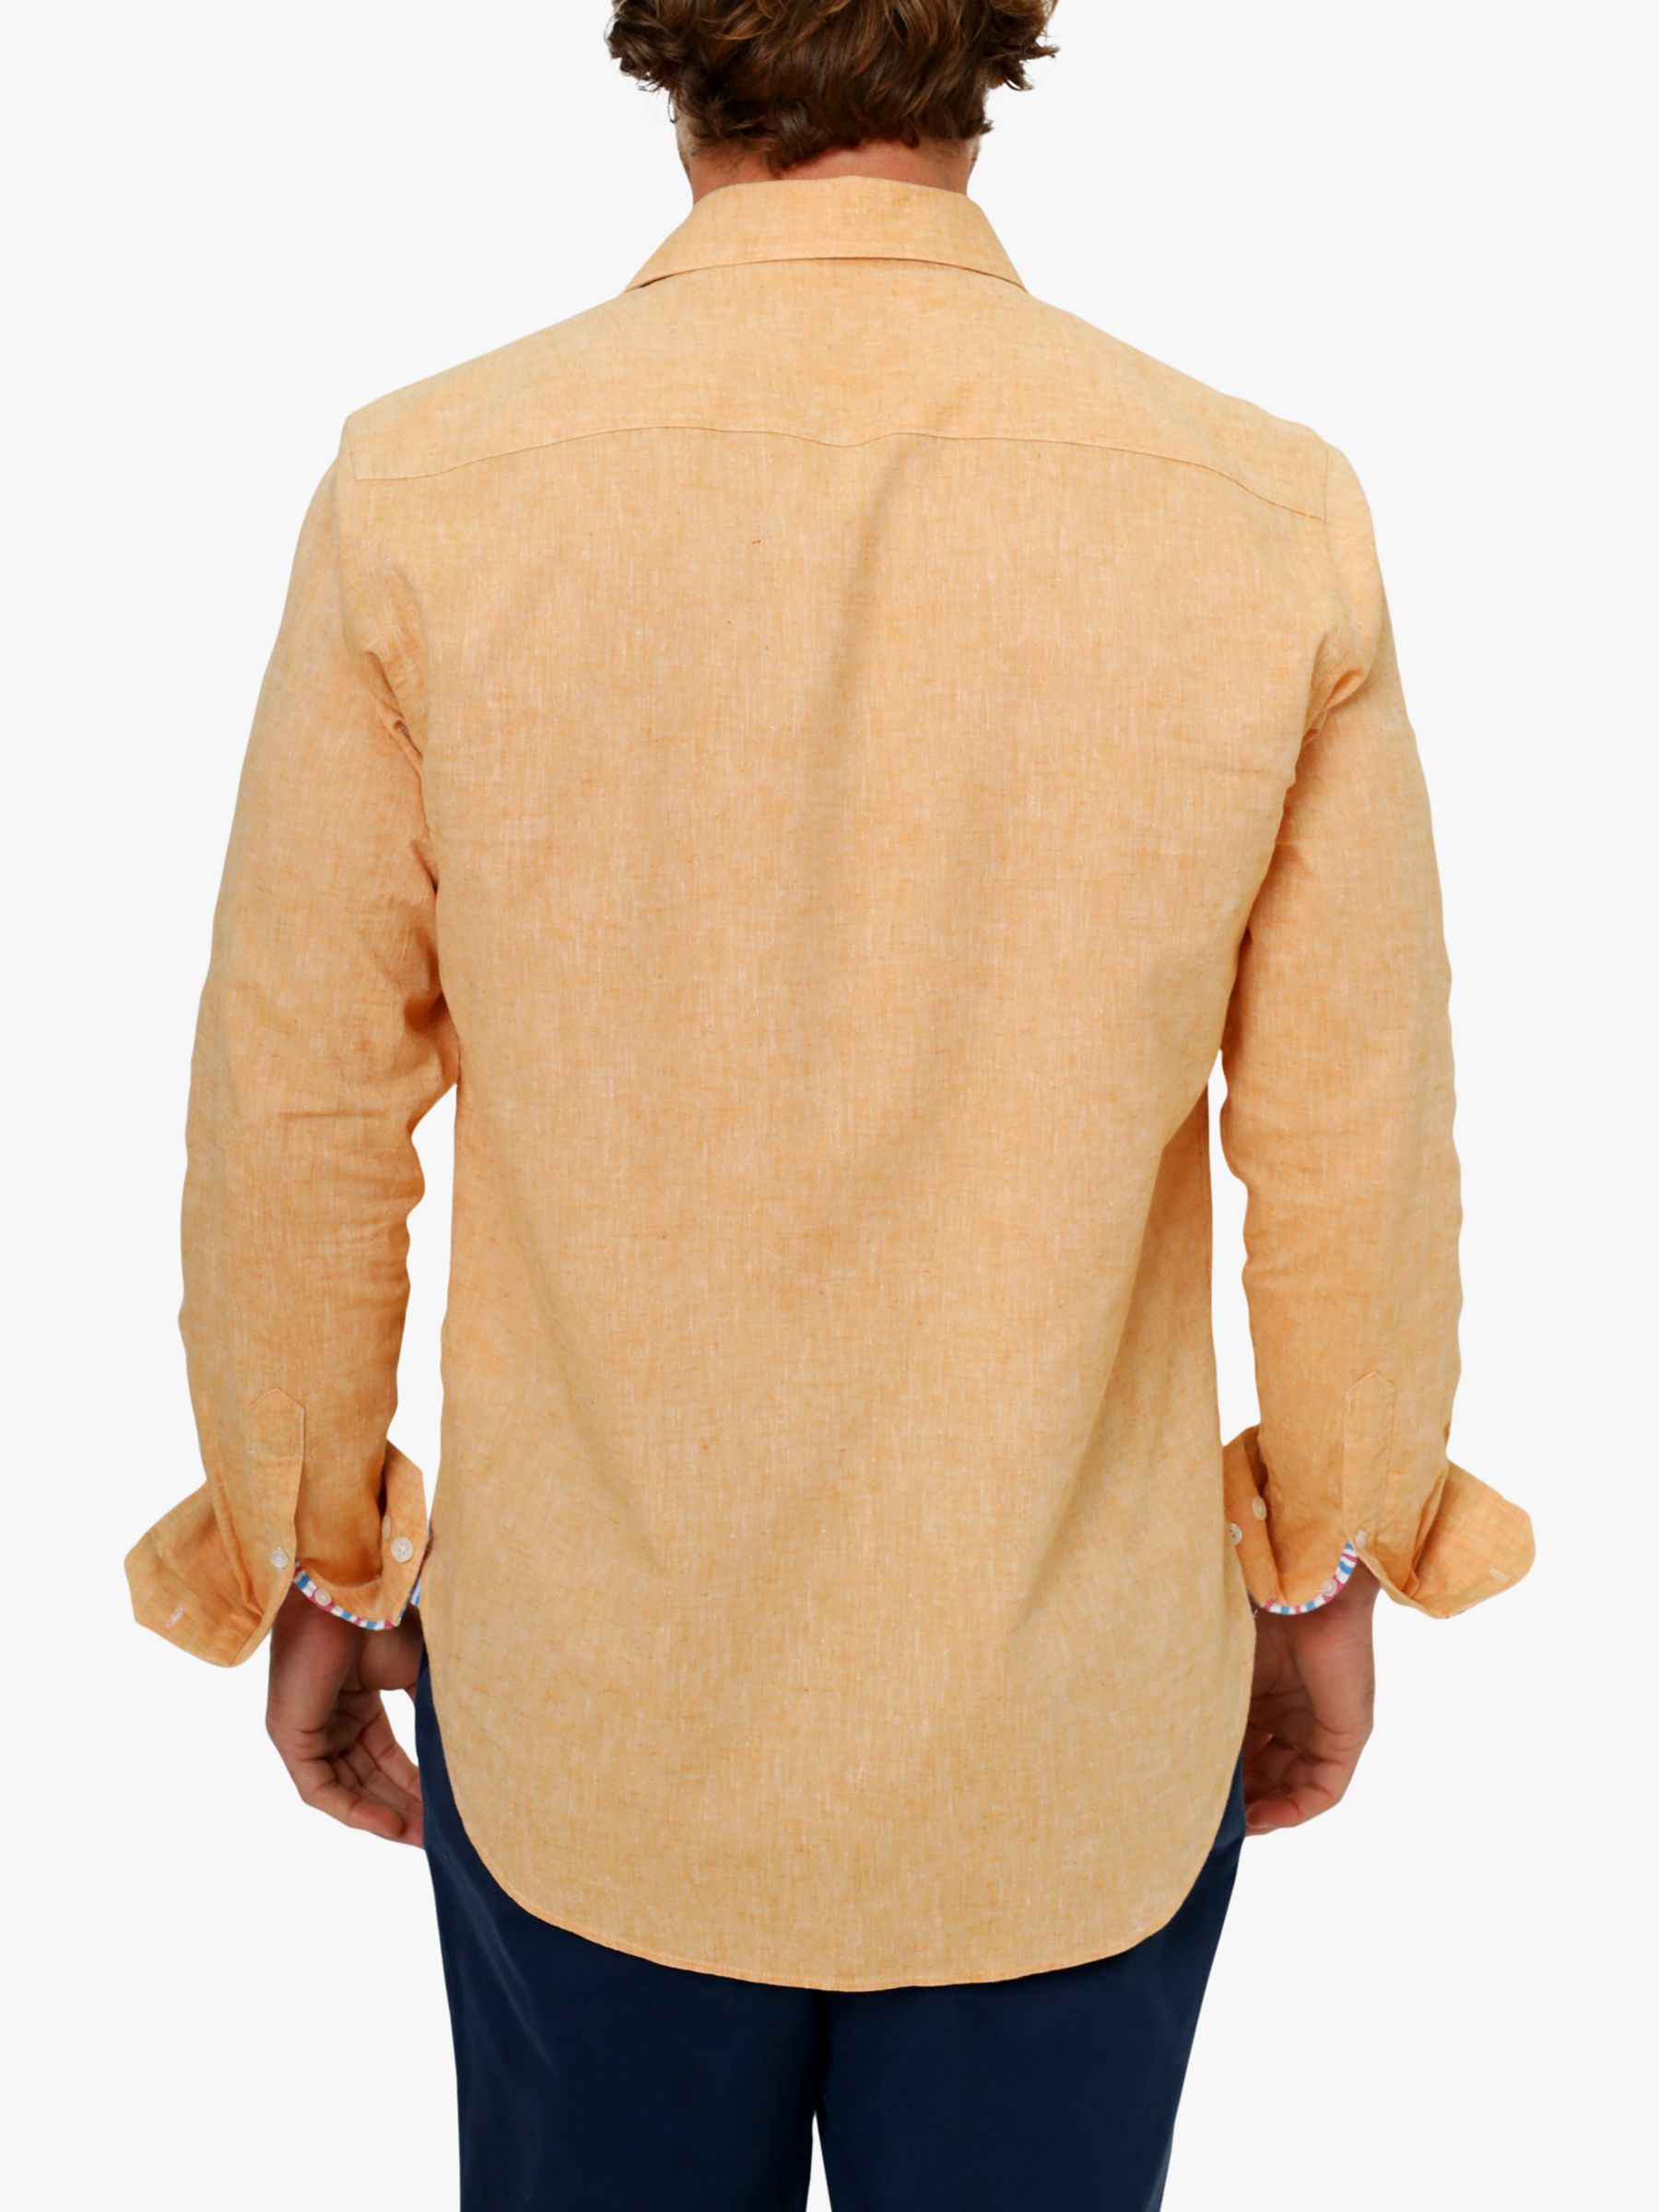 Buy KOY Linen Blend Shirt Online at johnlewis.com